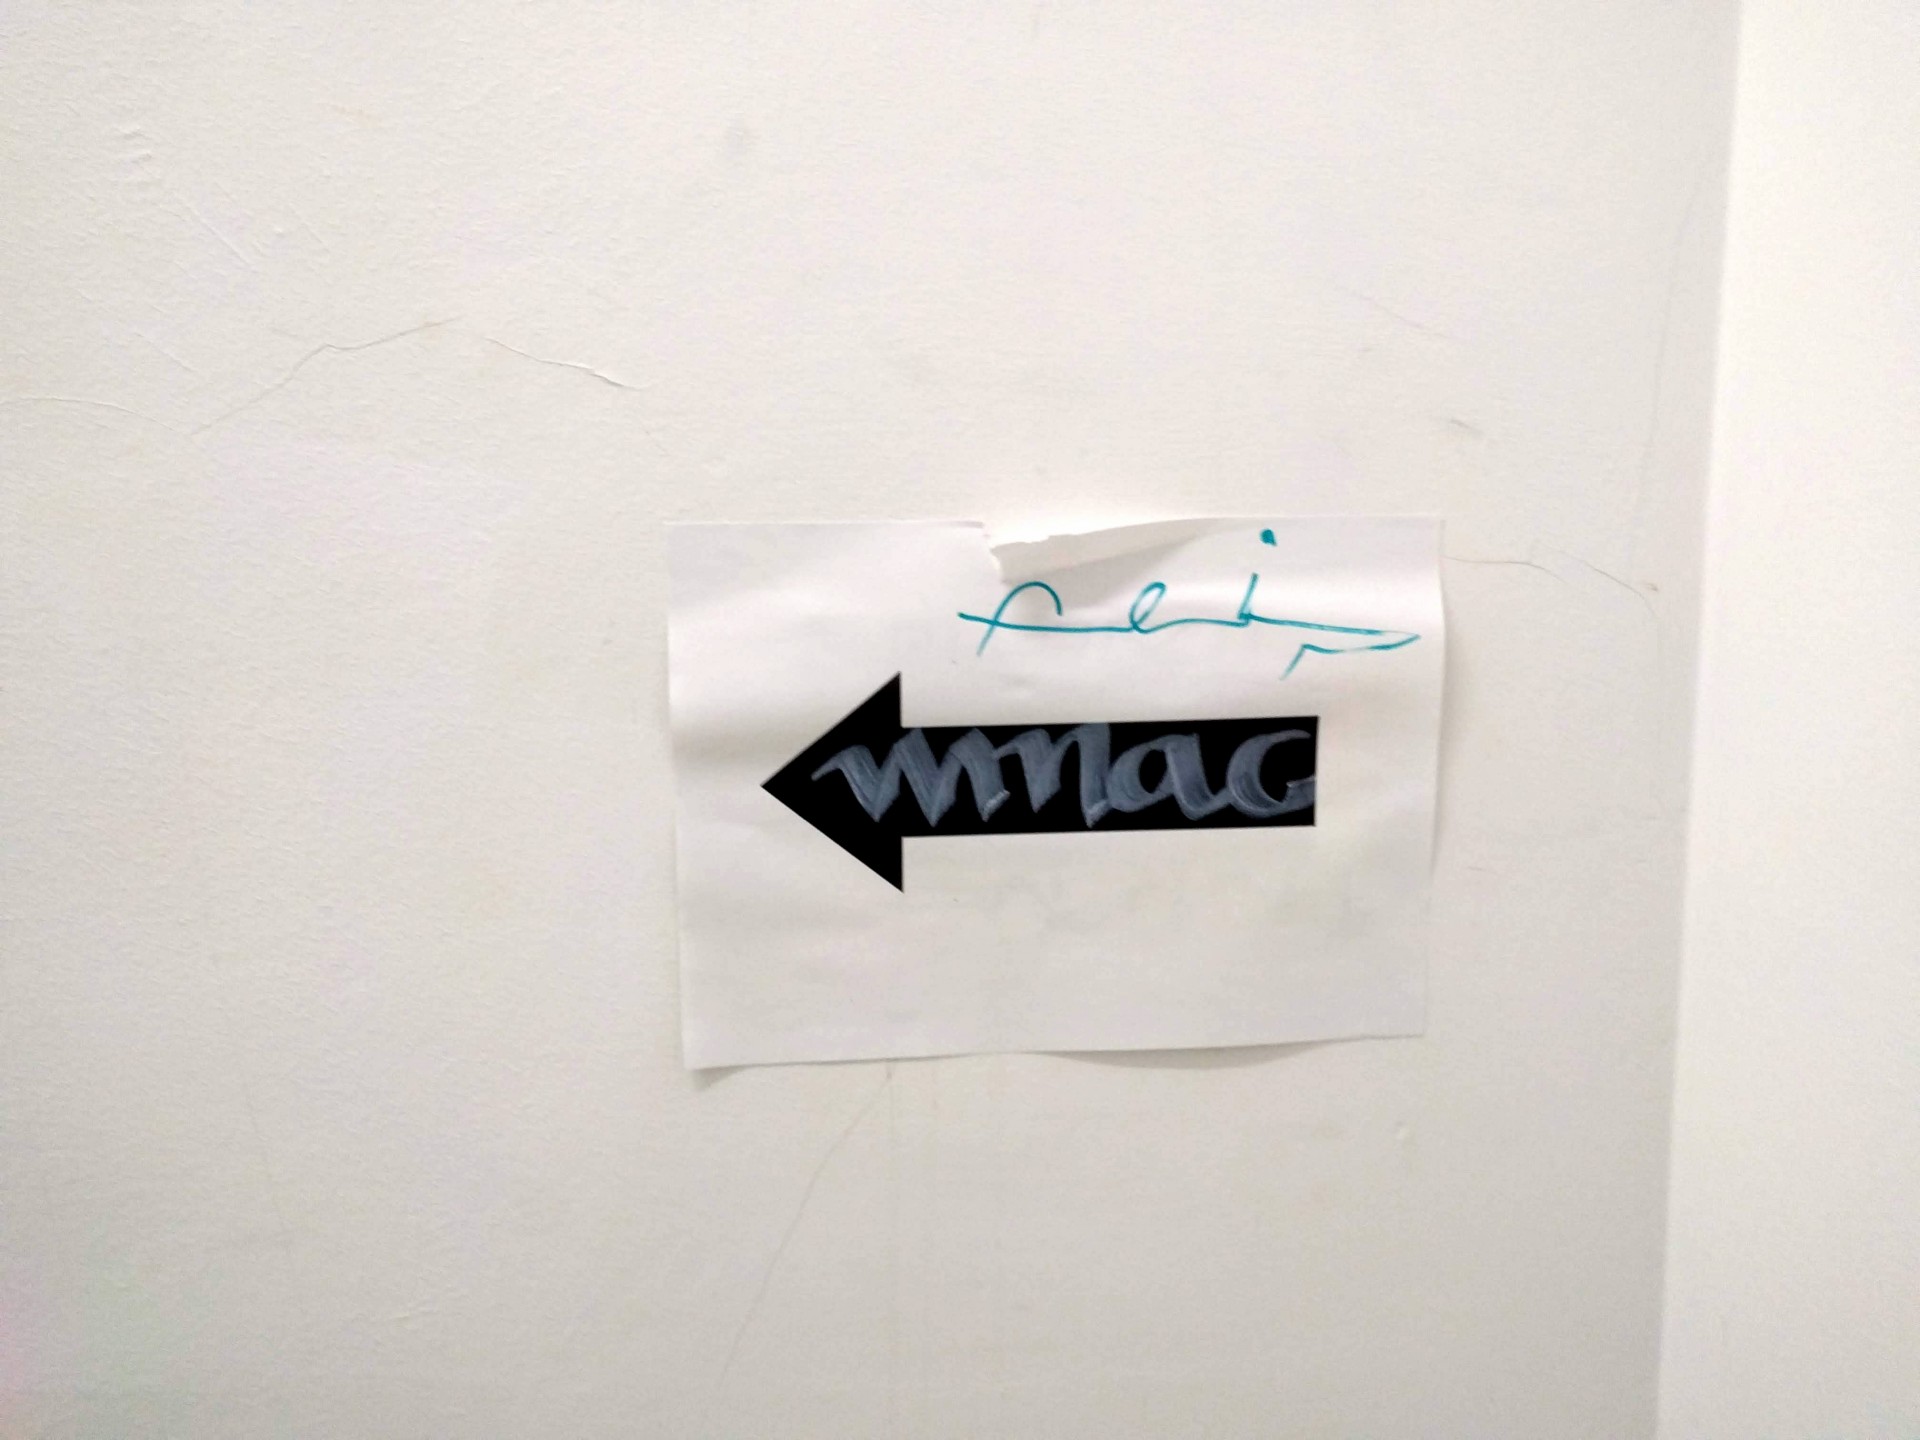 Graffiti pe scarile interioare ale MNAC